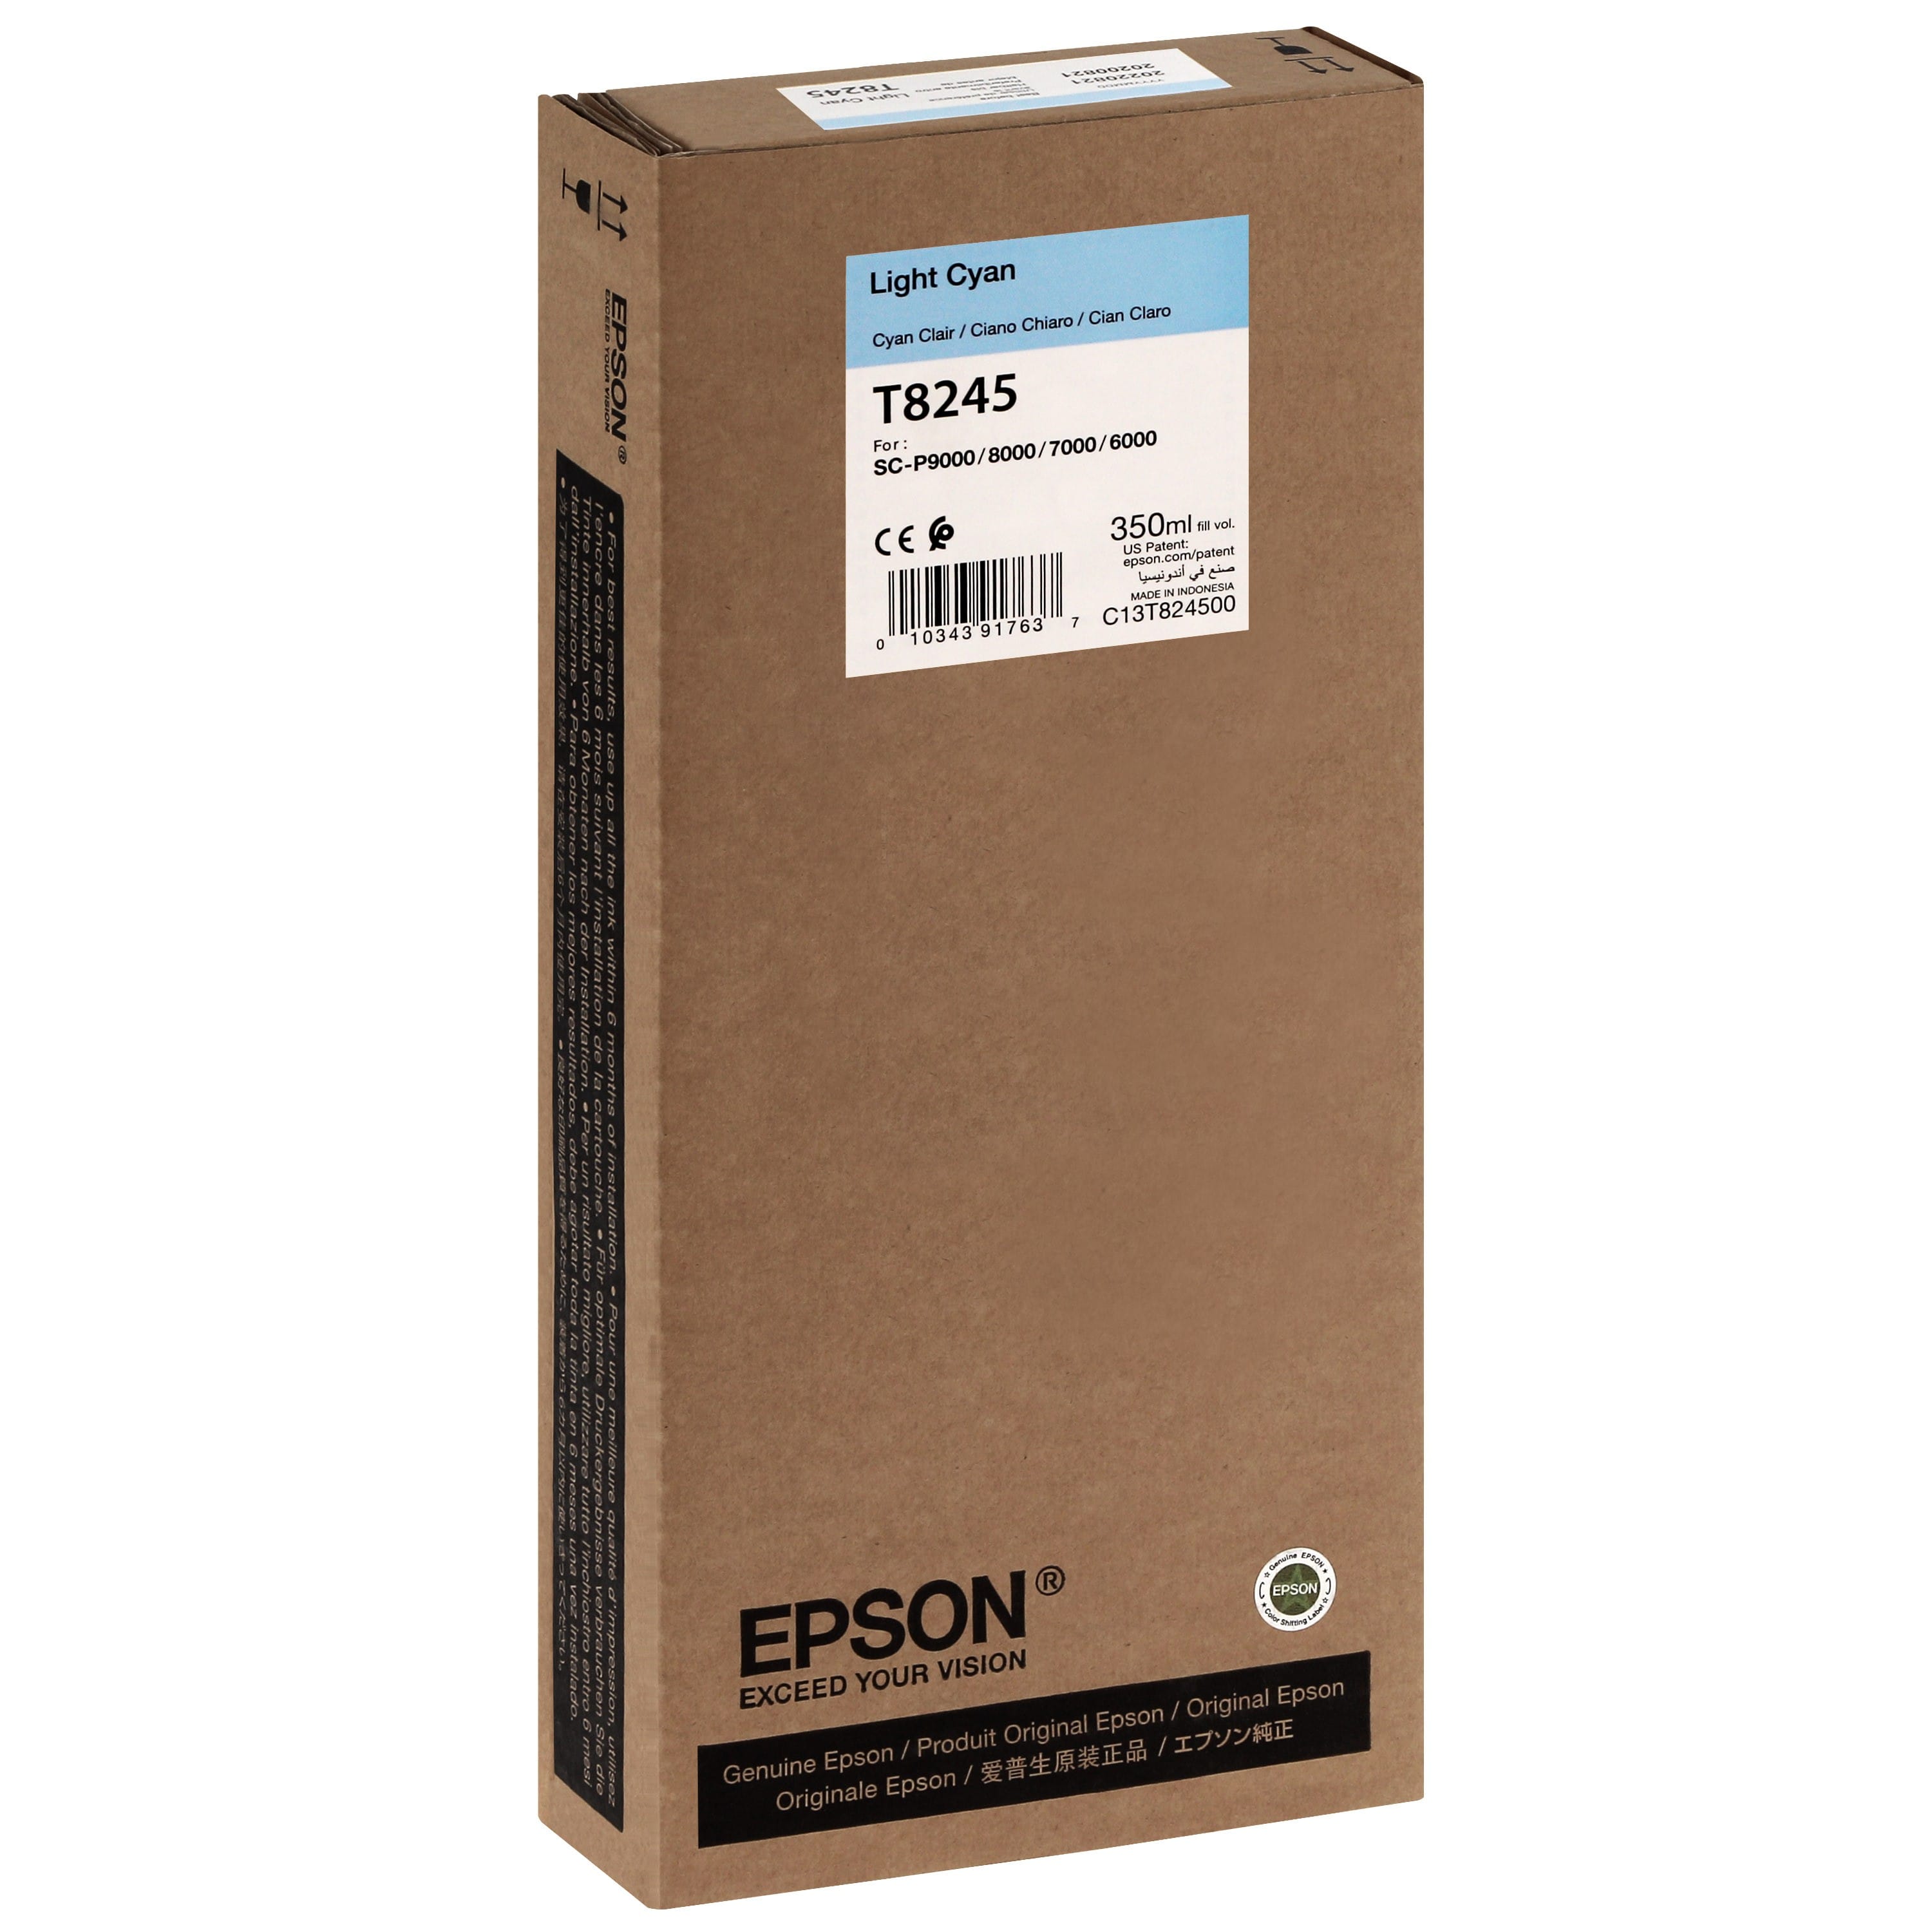 EPSON - Cartouche d'encre traceur T8245 Pour imprimante SC-P6000/7000/7000V/8000/9000/9000V Light cyan - 350ml